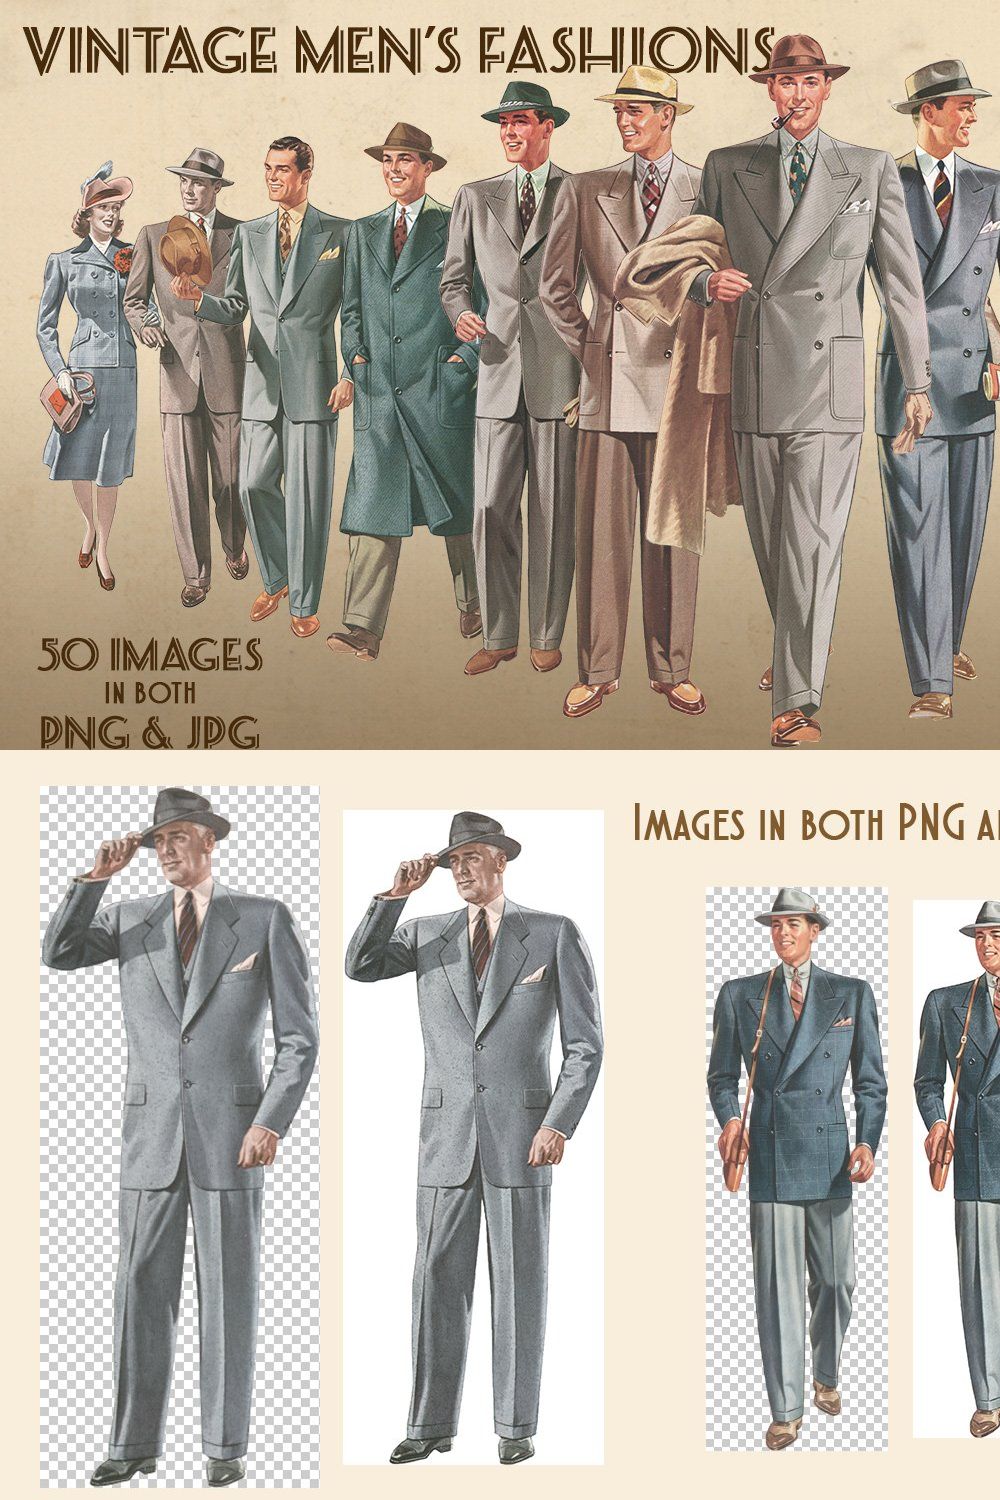 Vintage Men's Fashions pinterest preview image.